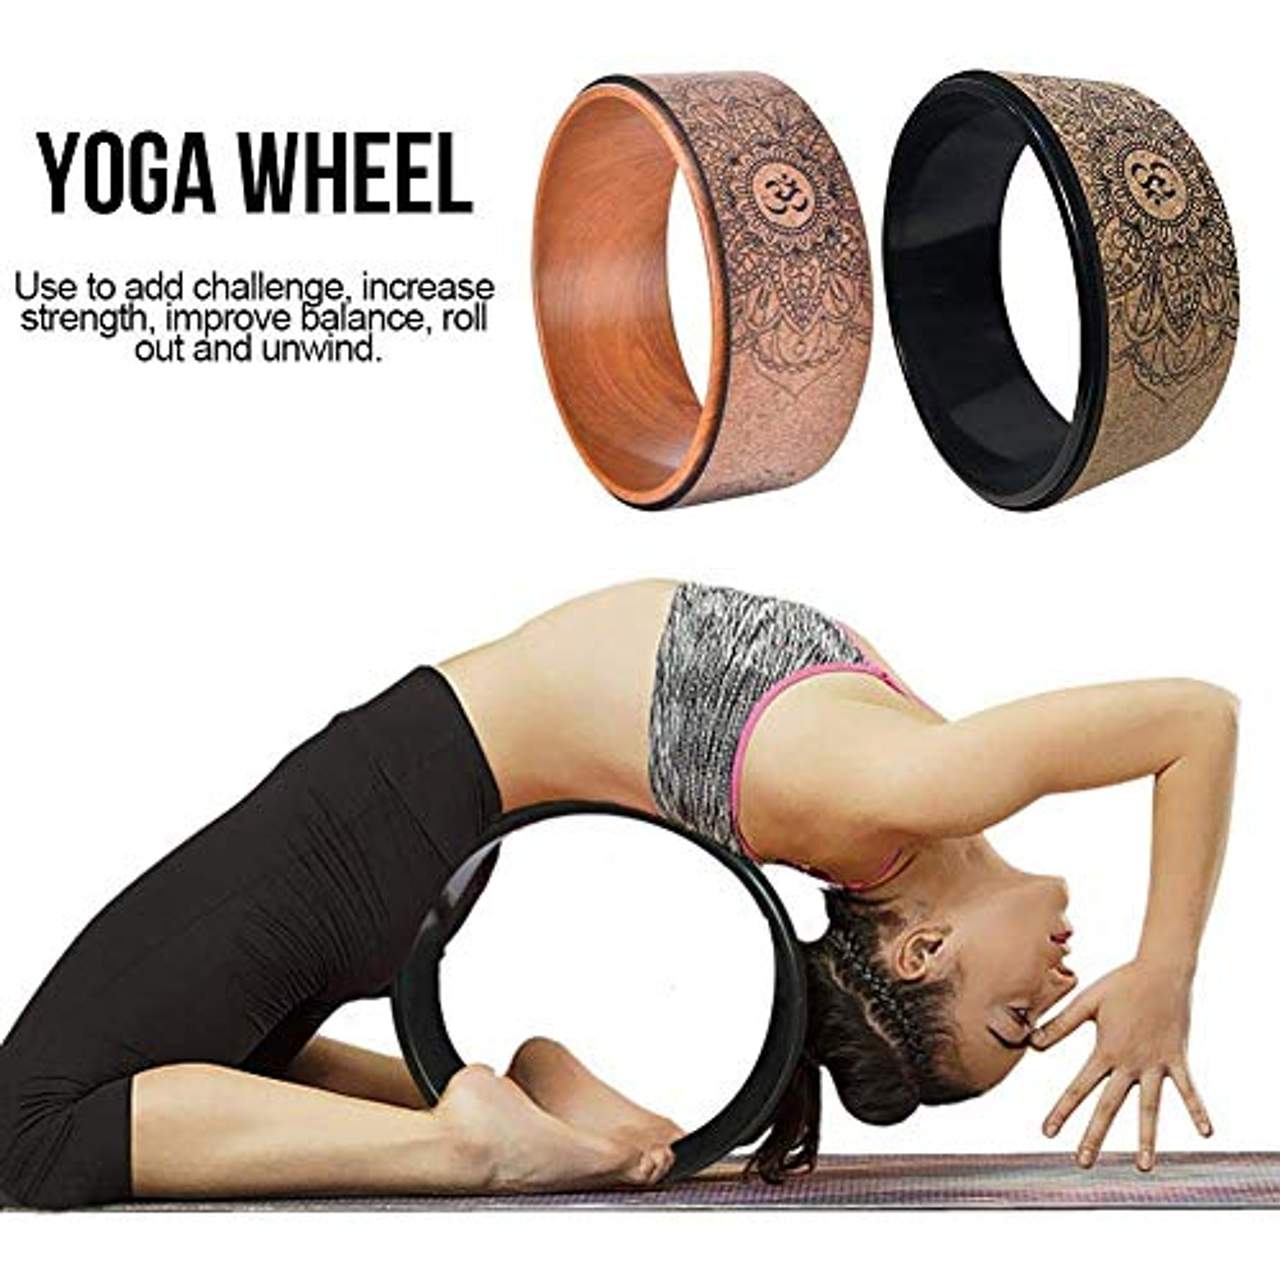 Das Yoga-Rad aus Naturkork